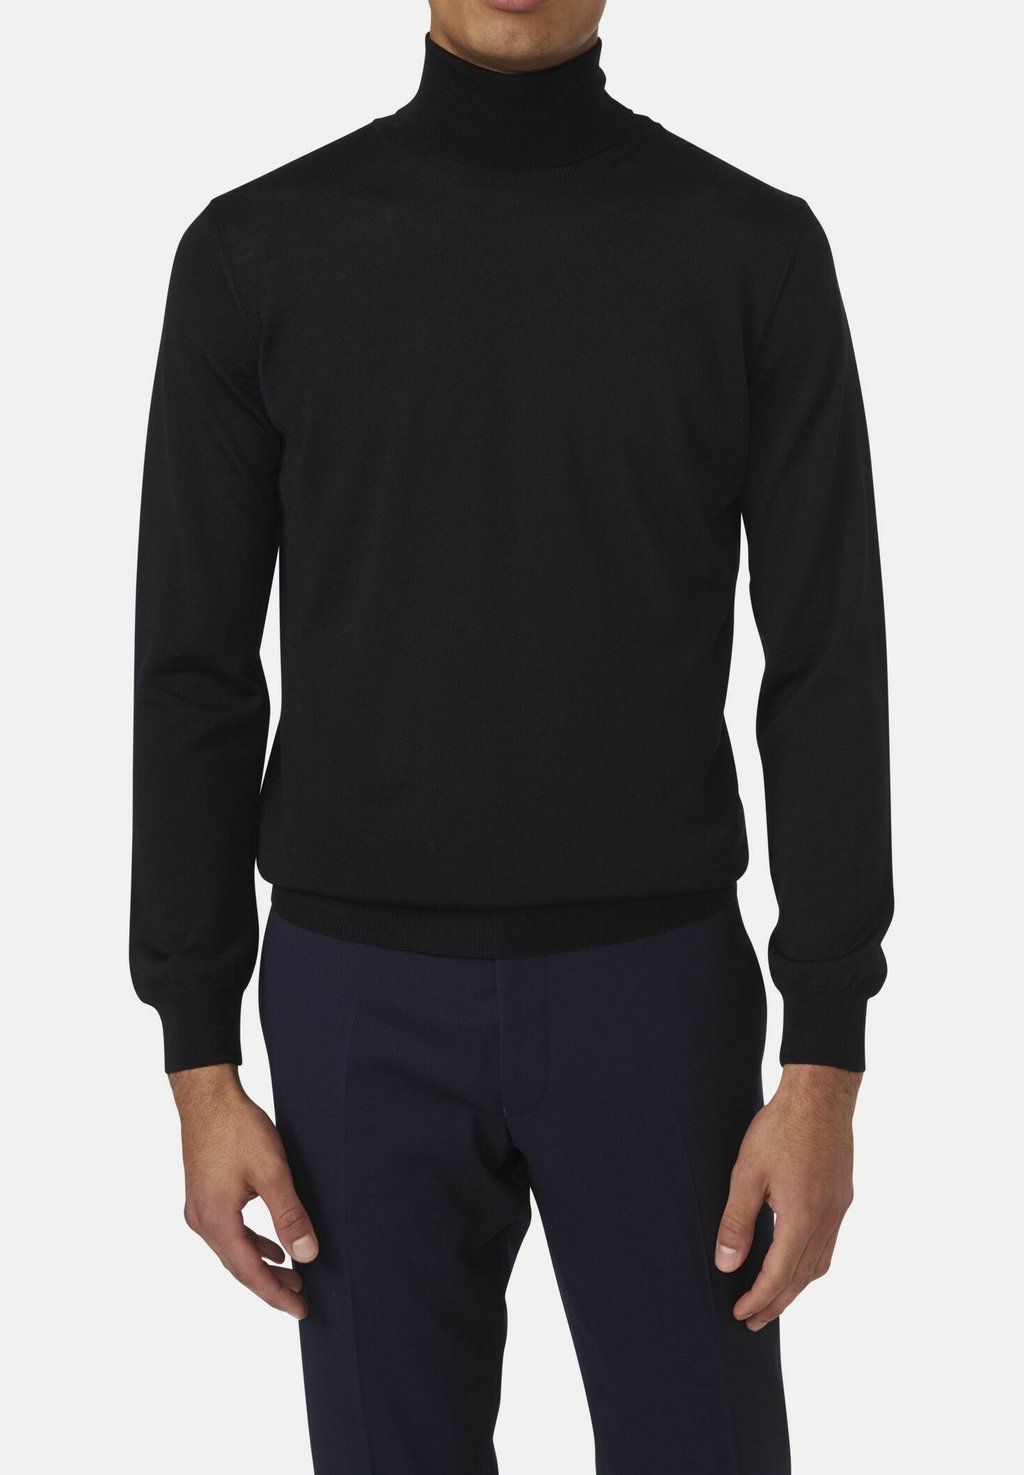 вязаный свитер patton oscar jacobson цвет dark grey Вязаный свитер COLE Oscar Jacobson, цвет night blue